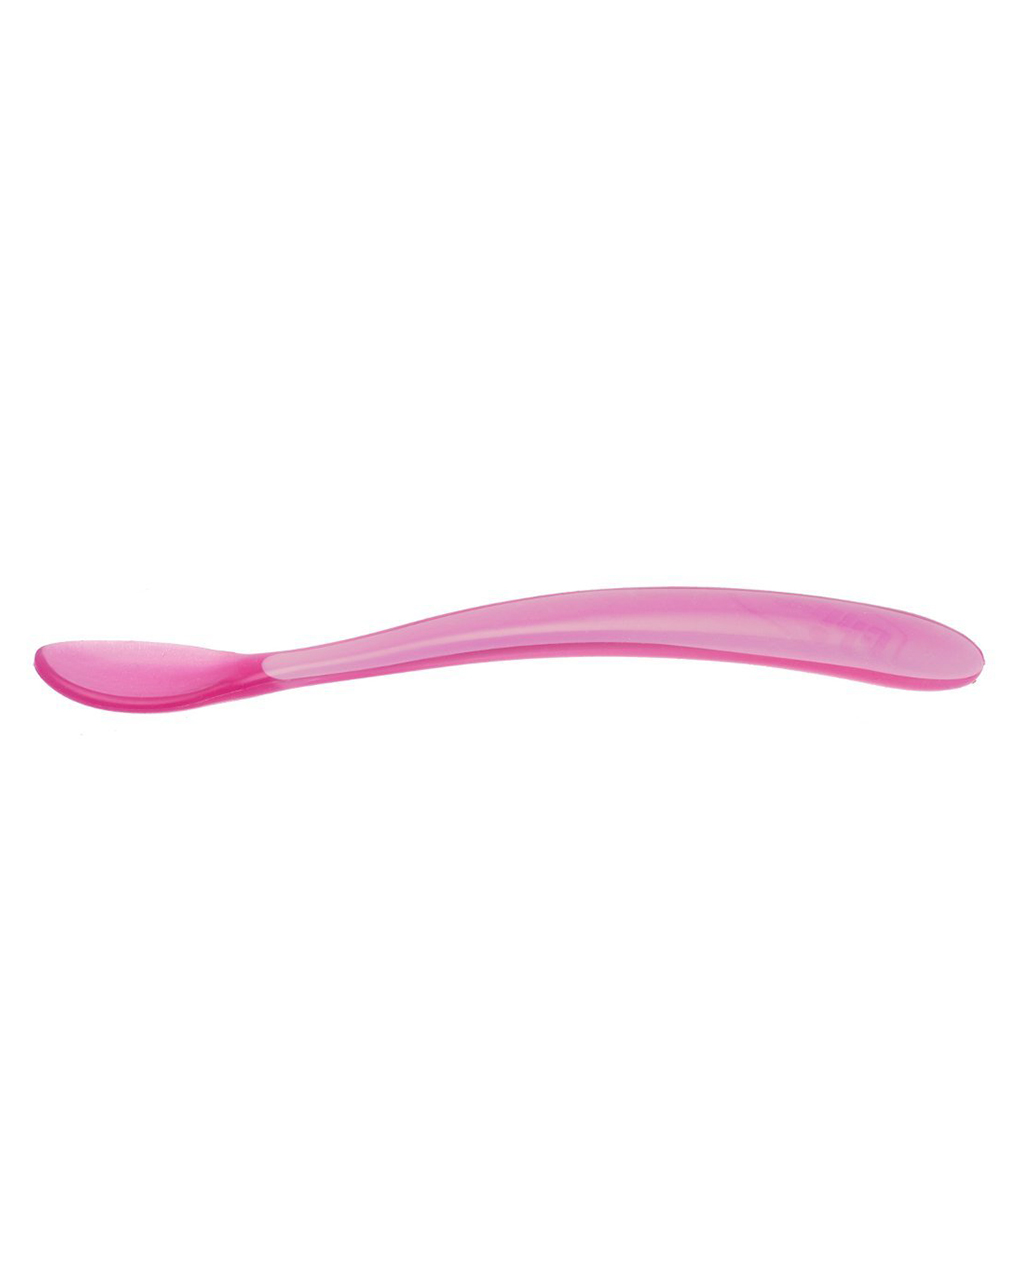 Chicco - cuchara de silicona suave 6m+ rosa (2pcs) - Chicco